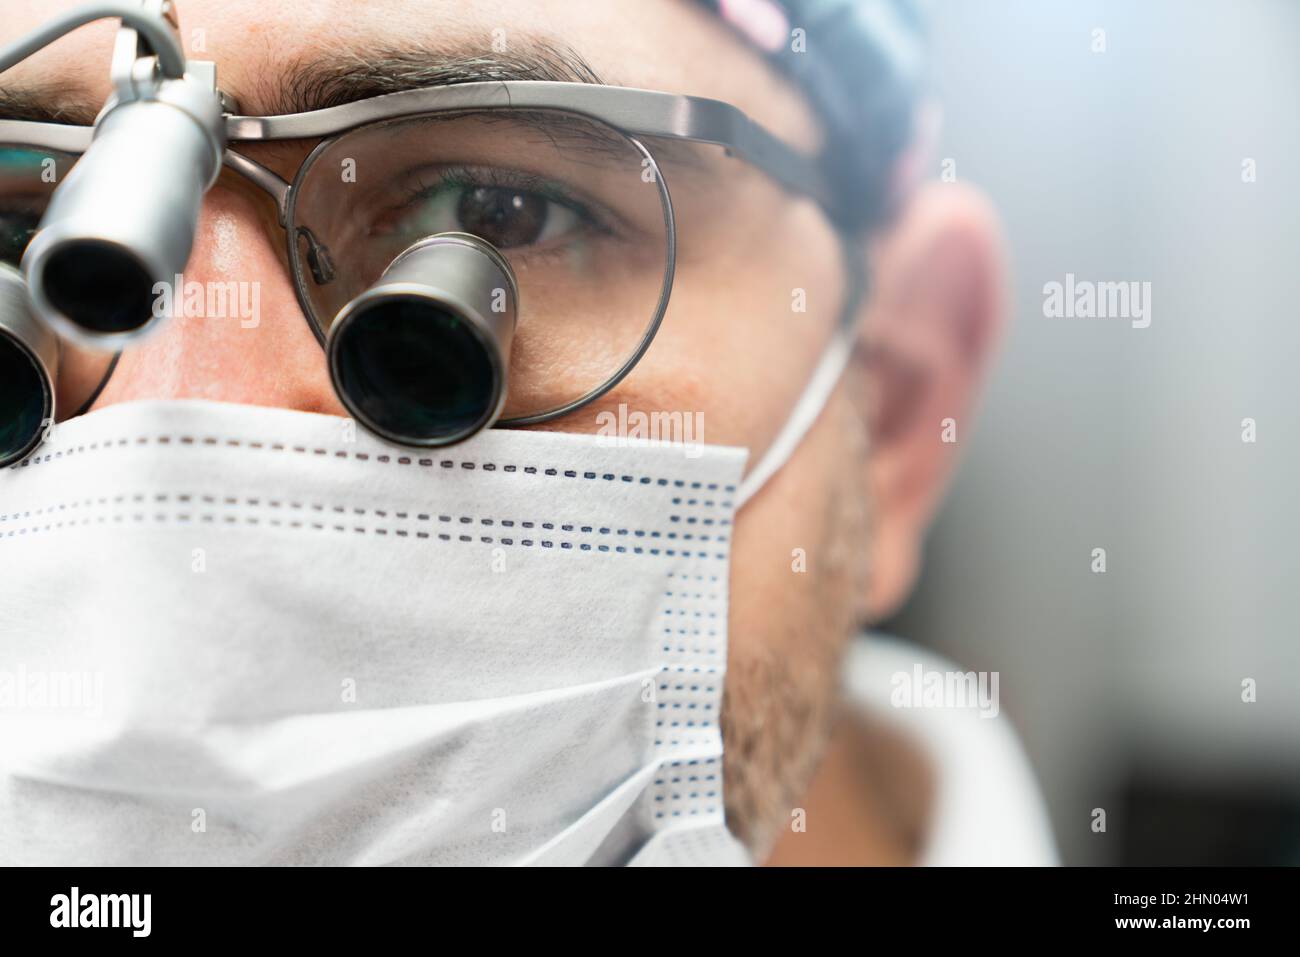 Occhiali chirurgici immagini e fotografie stock ad alta risoluzione - Alamy